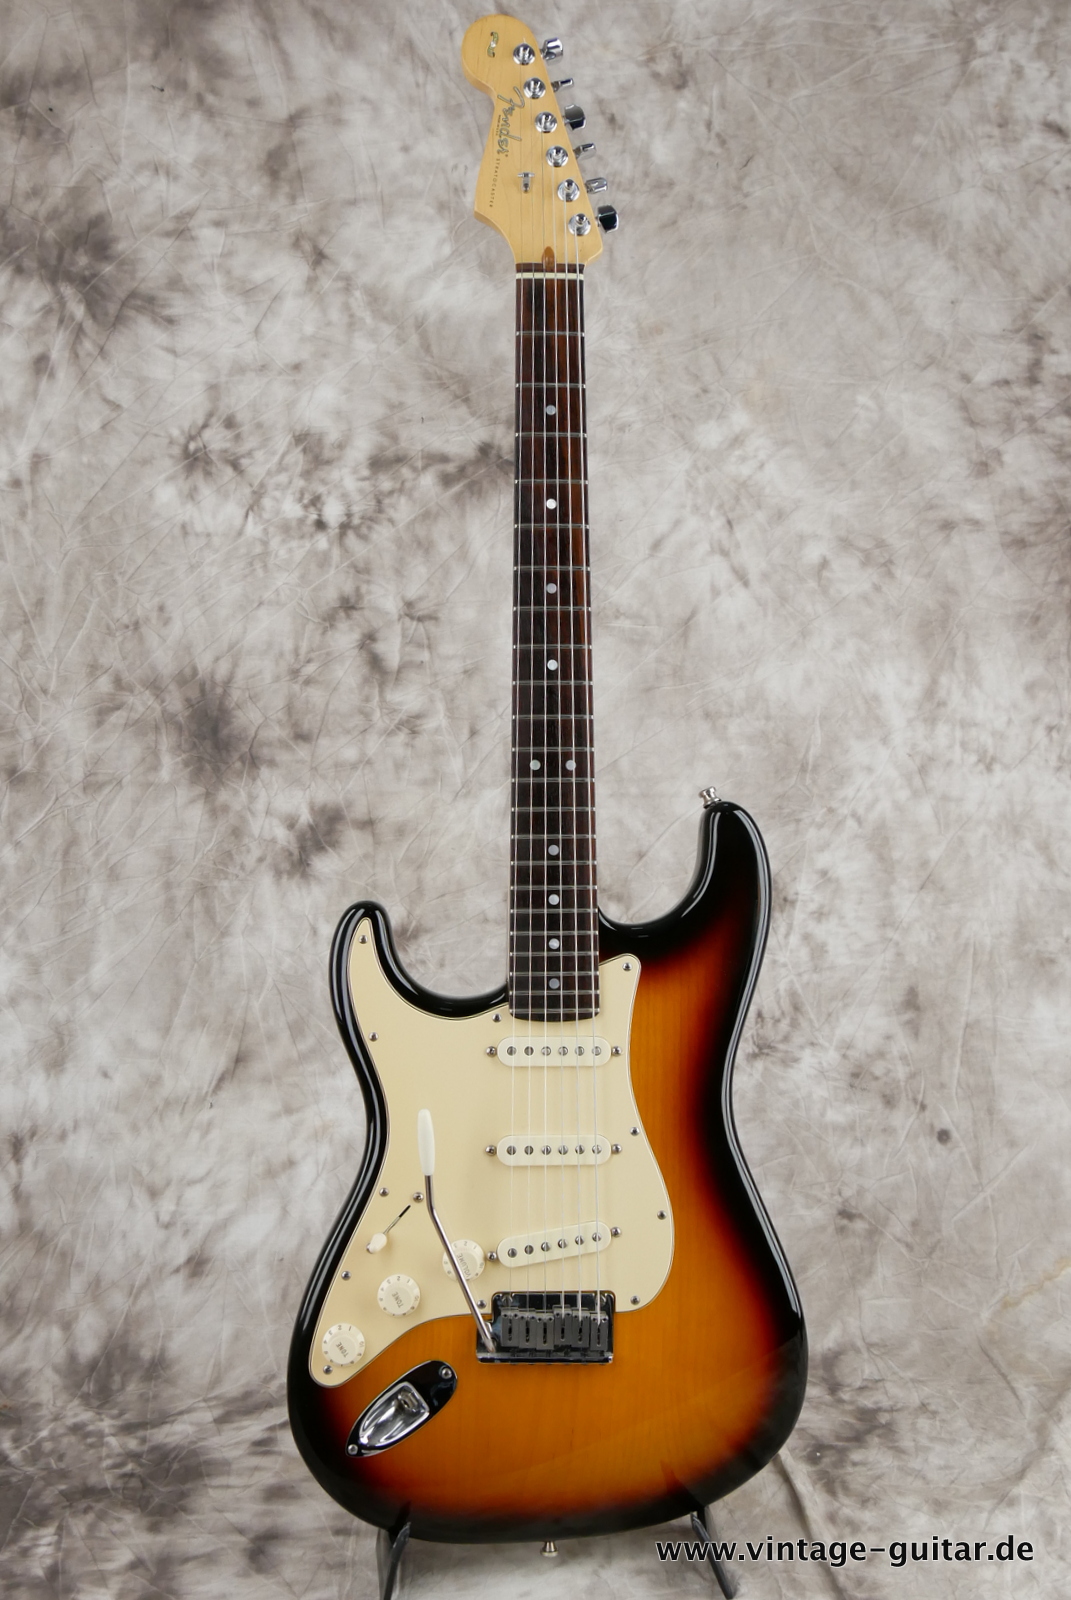 Fender_Stratocaster_American_Series_Diamond_Anniversary_60th_Left_handed_USA_sunburst-001.JPG